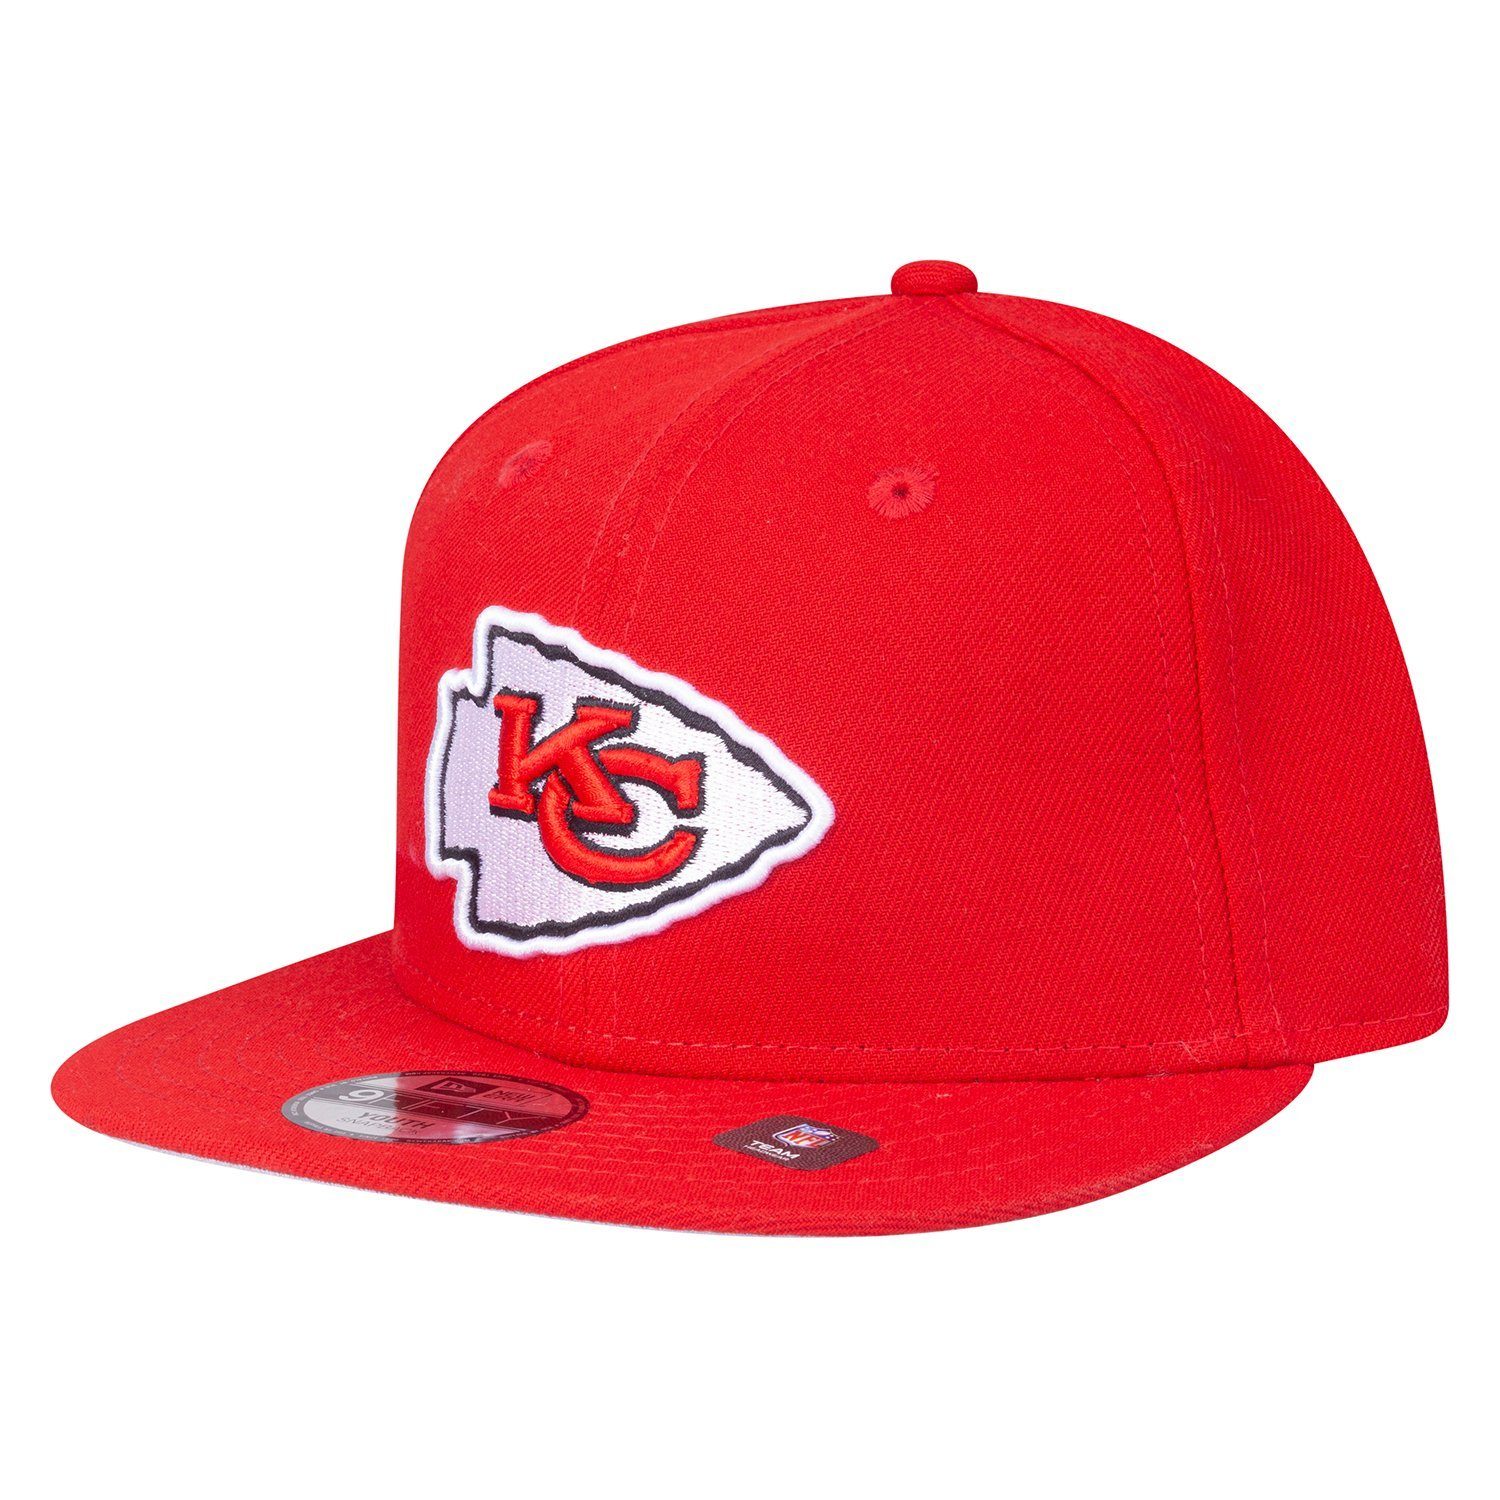 RED Baseball 9Fifty Kansas Era Teams Chiefs Jugend City NFL Cap New